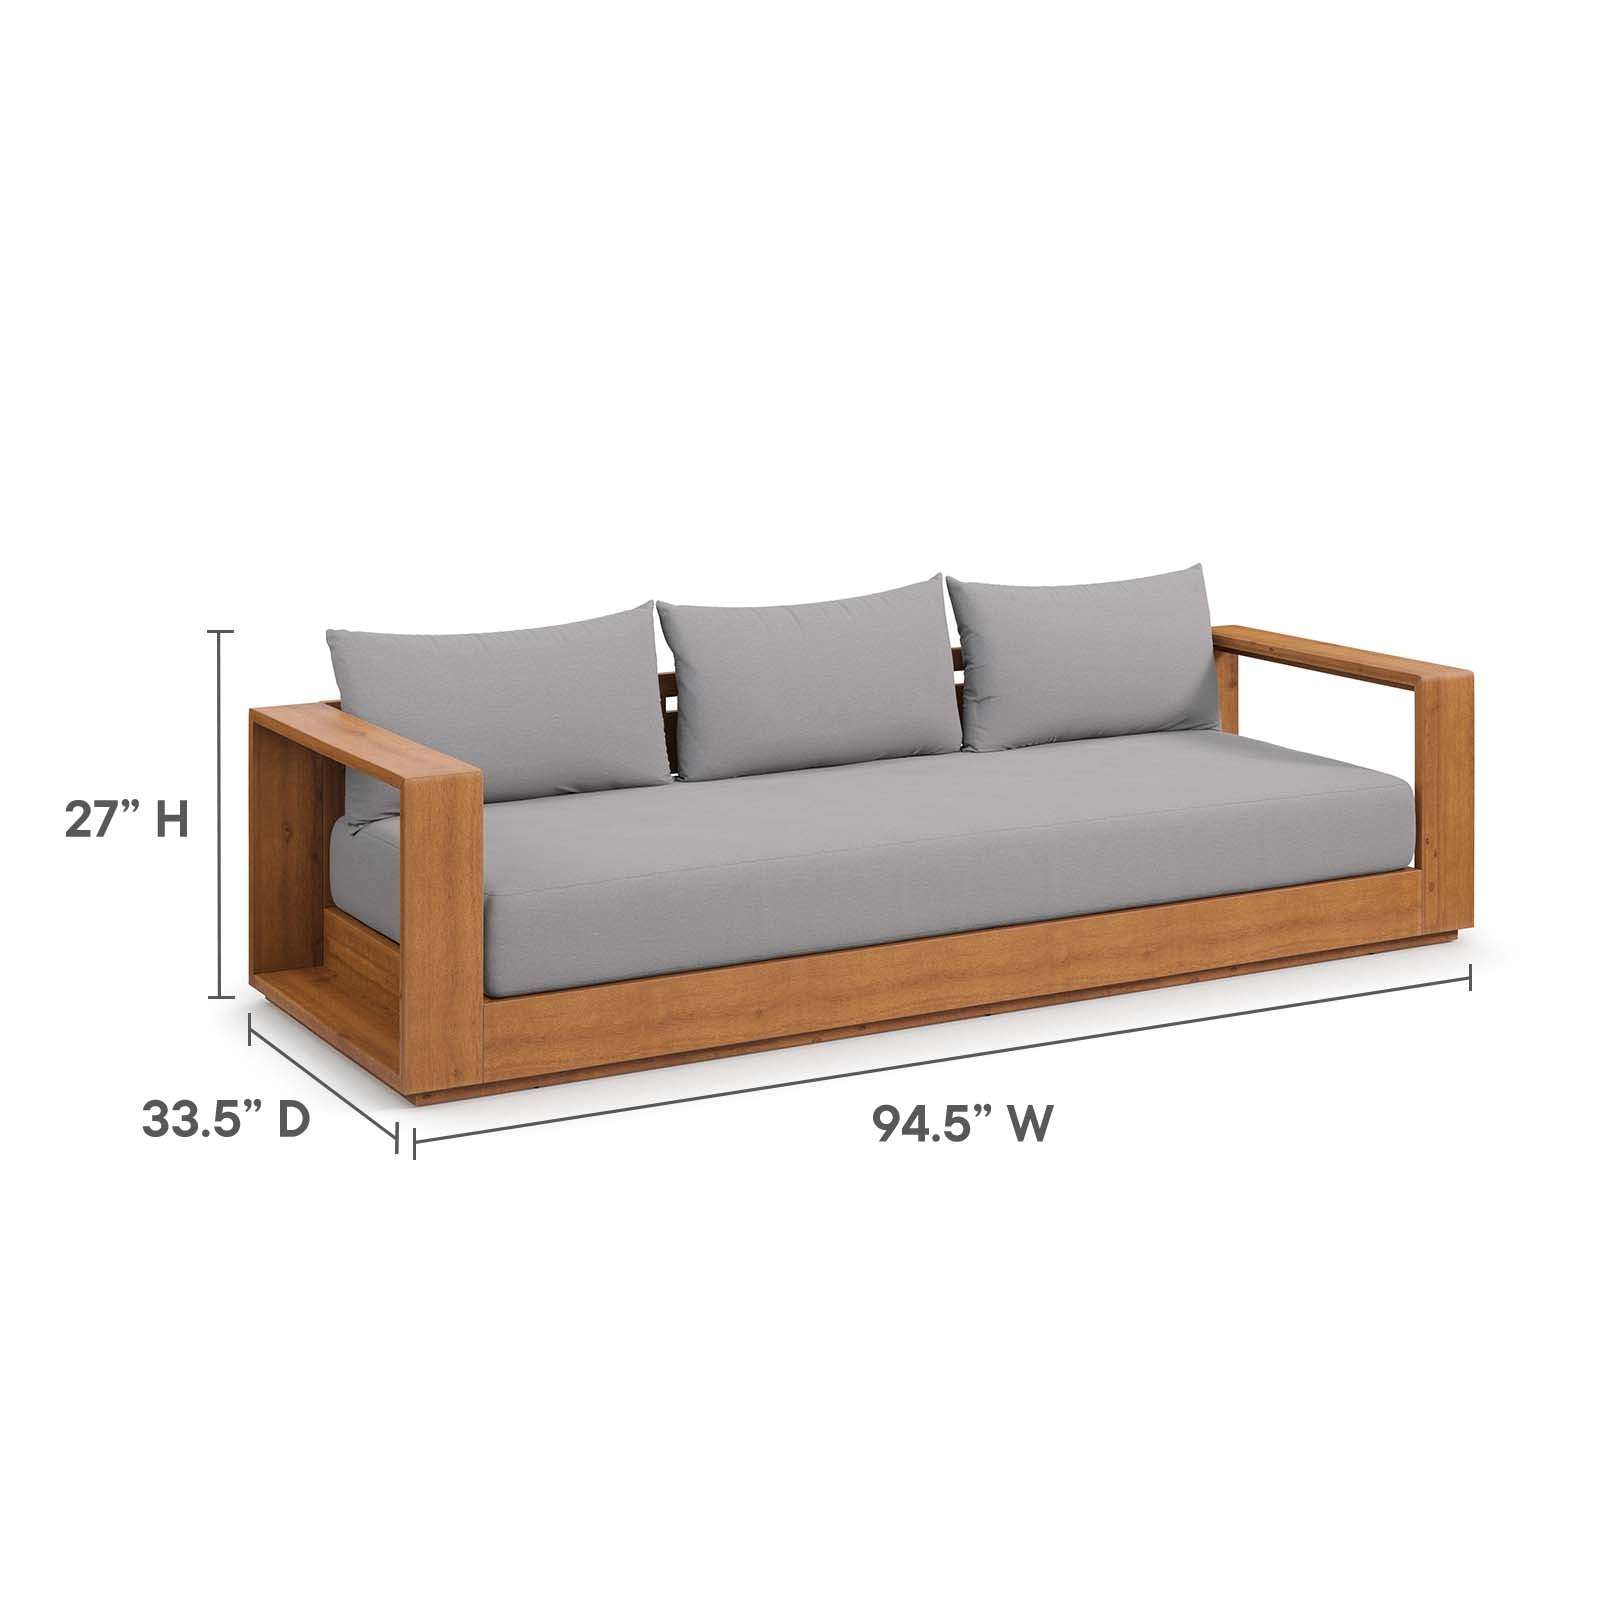 Modway - Tahoe Outdoor Patio Acacia Wood 5-Piece Furniture Set - Light Gray - EEI-6801-NAT-LGR